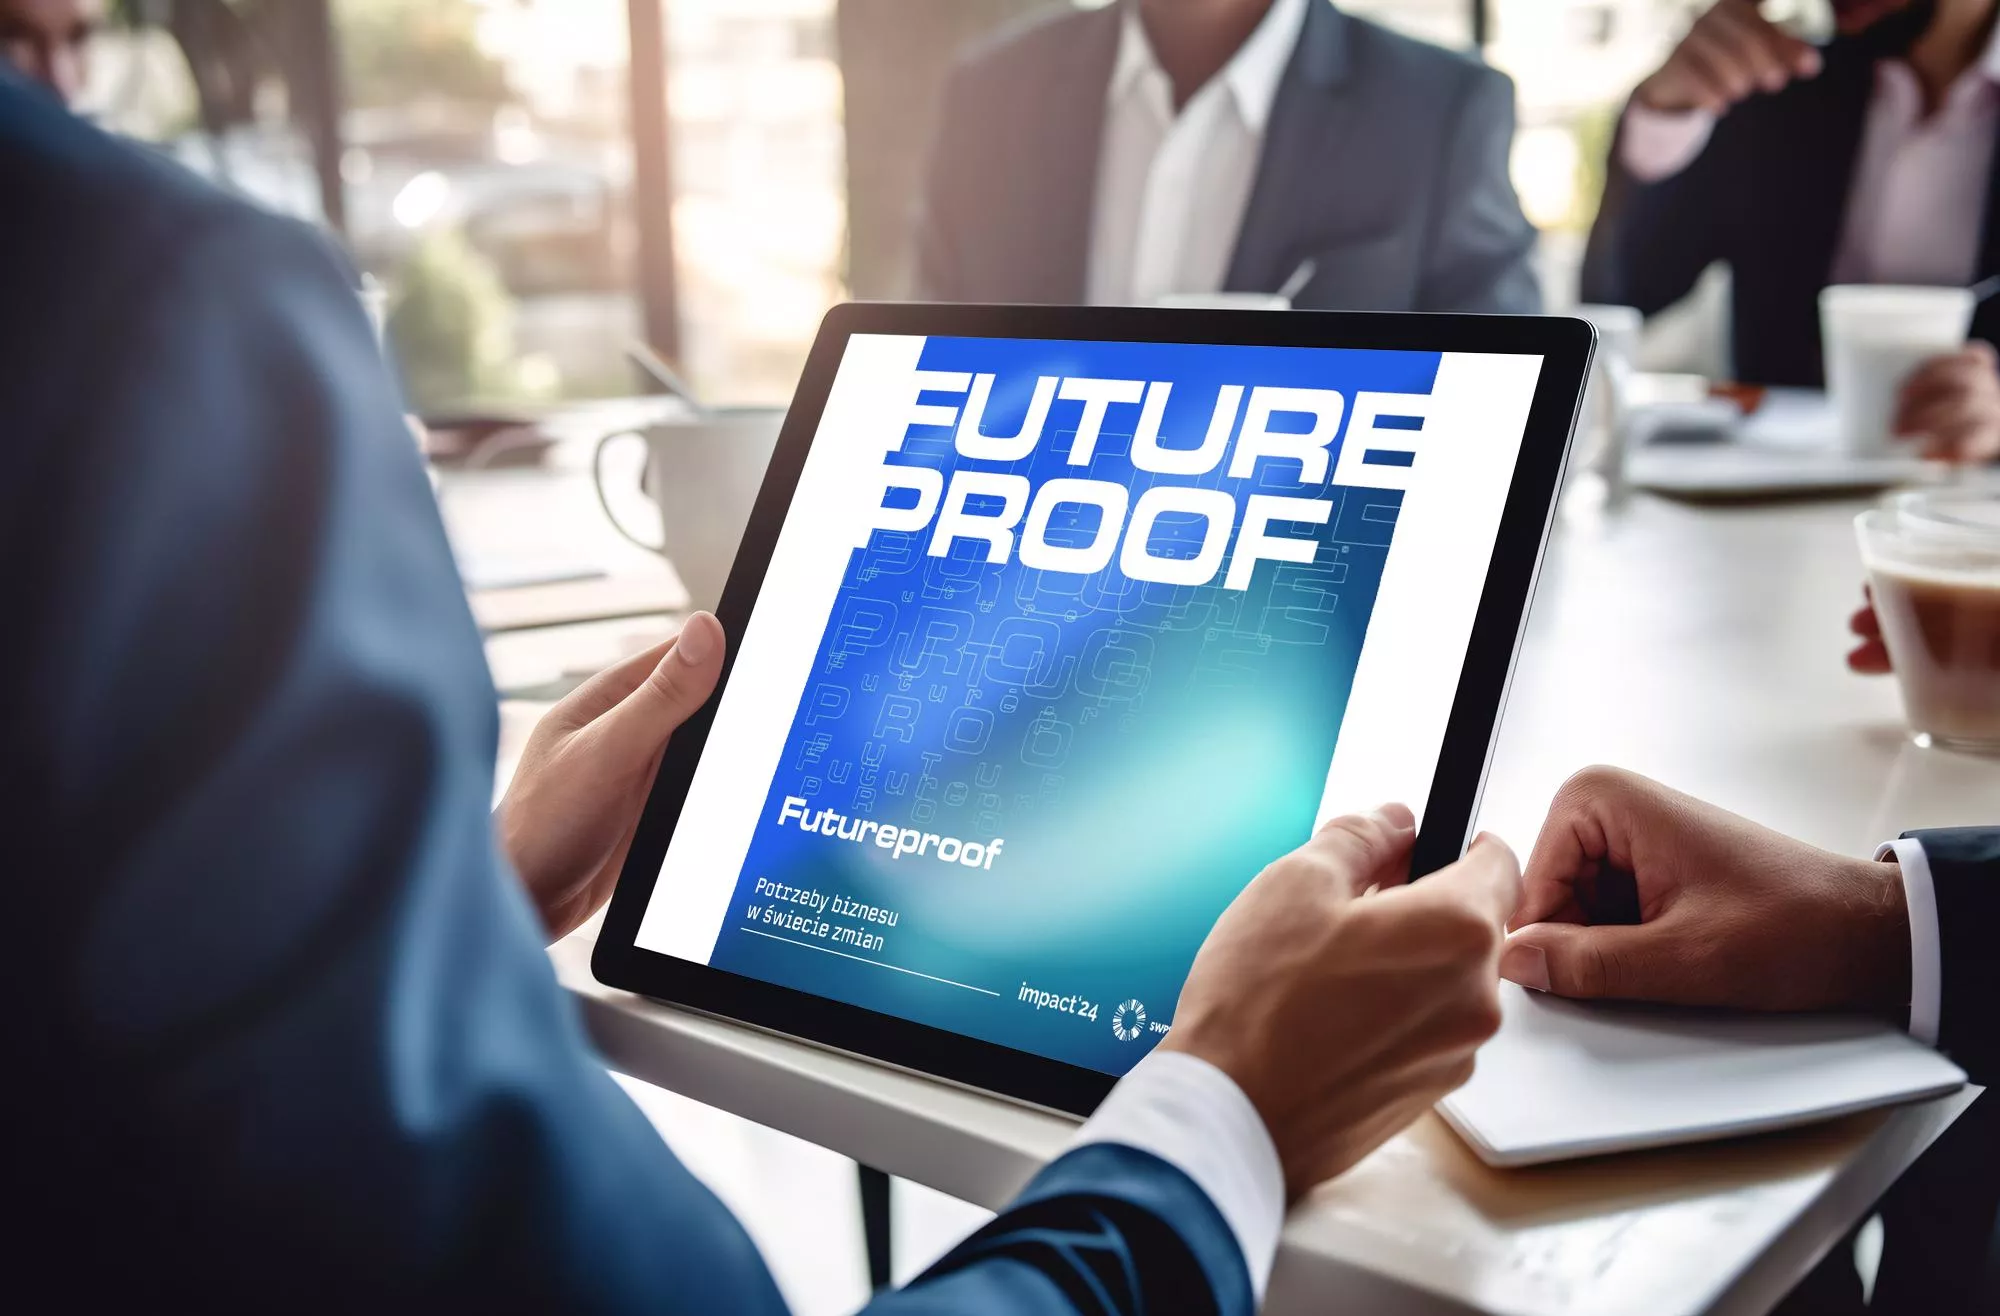 Raport FutureProof – Potrzeby biznesu w świecie zmian